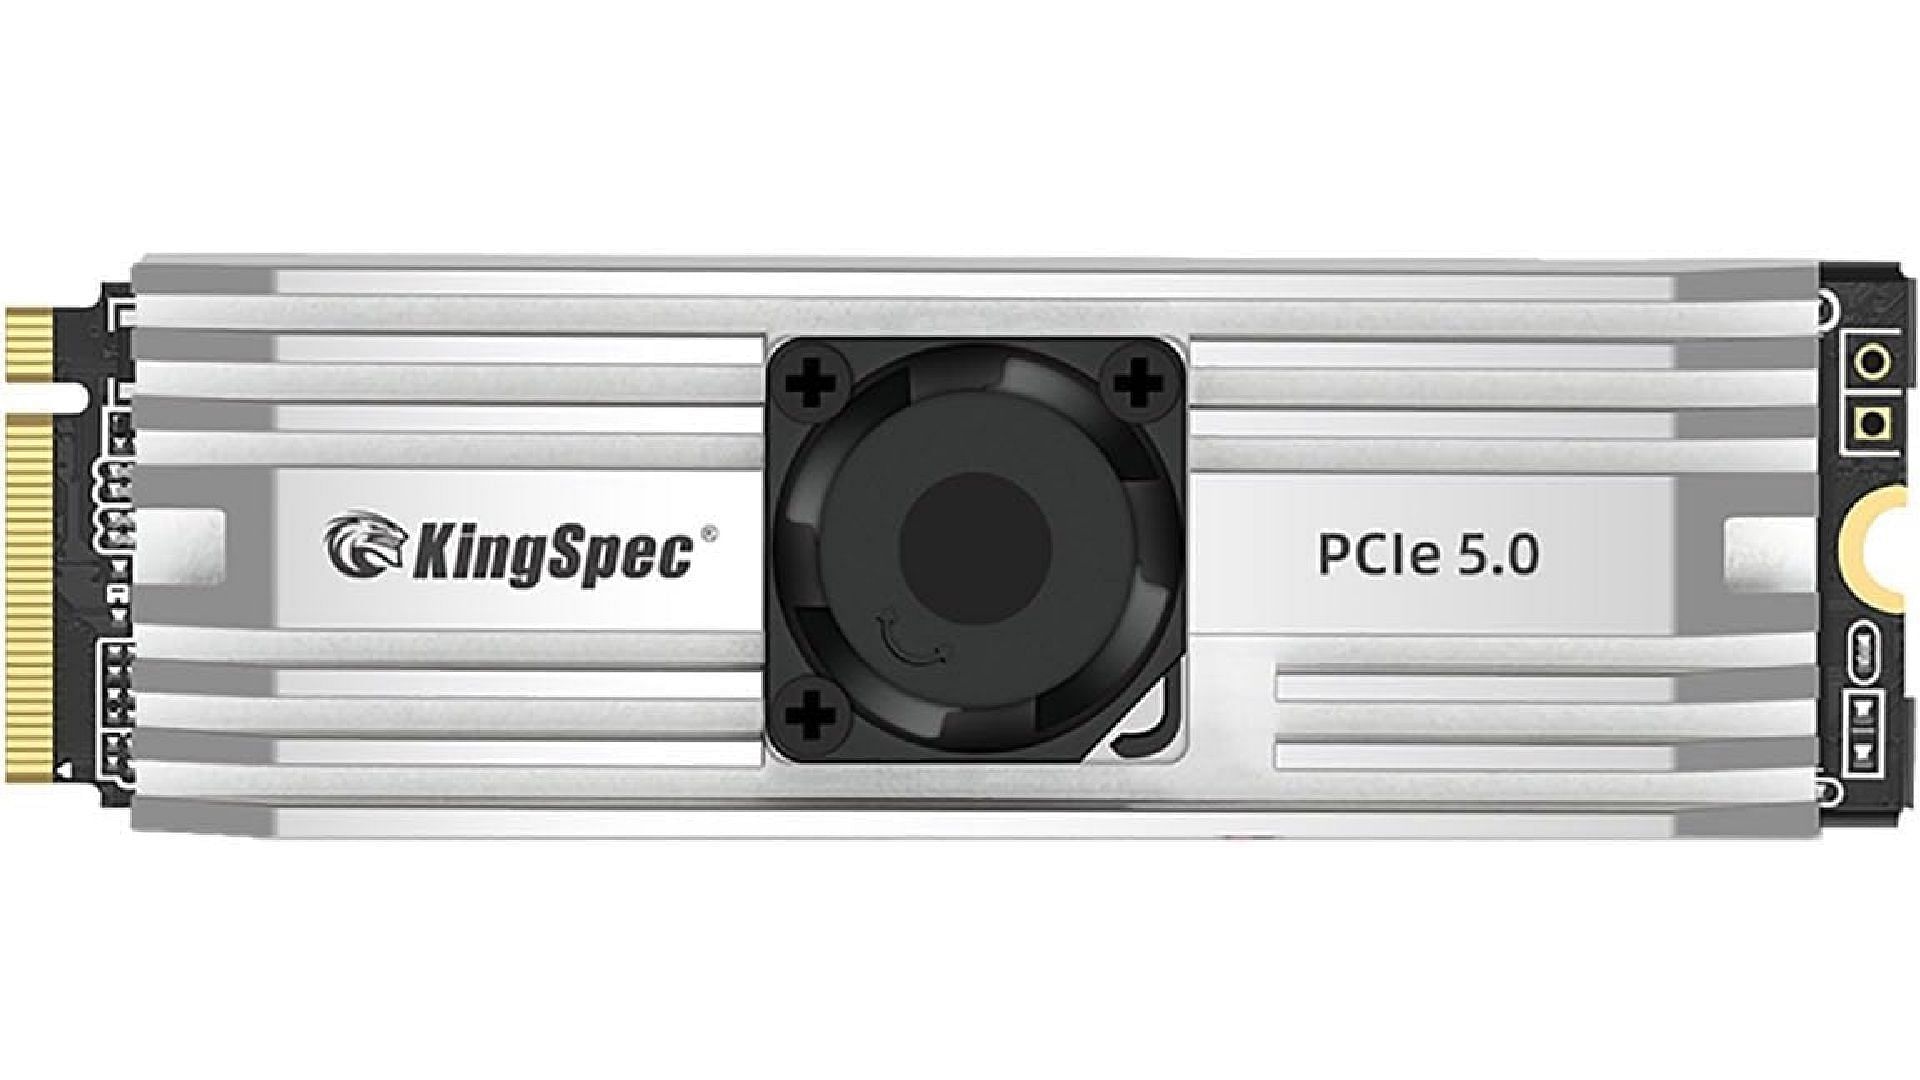 KingSpec VP101 2TB PCIe 5.0 SSD (Image via KingSpec)